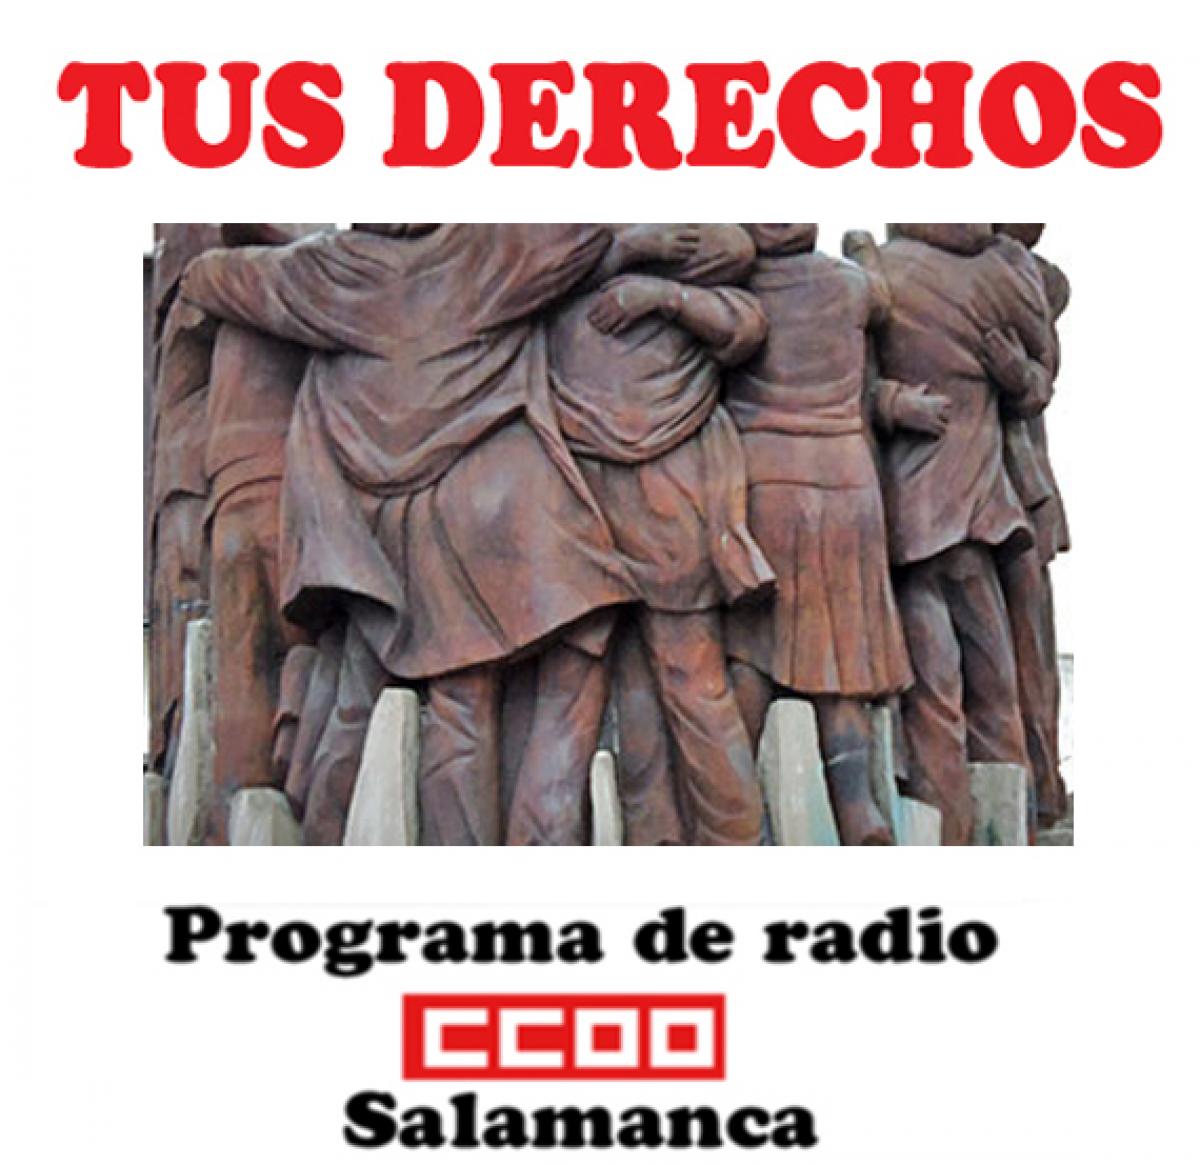 Programa de radio "Tus derechos" de CCOO en Salamanca. Escchalo aqu